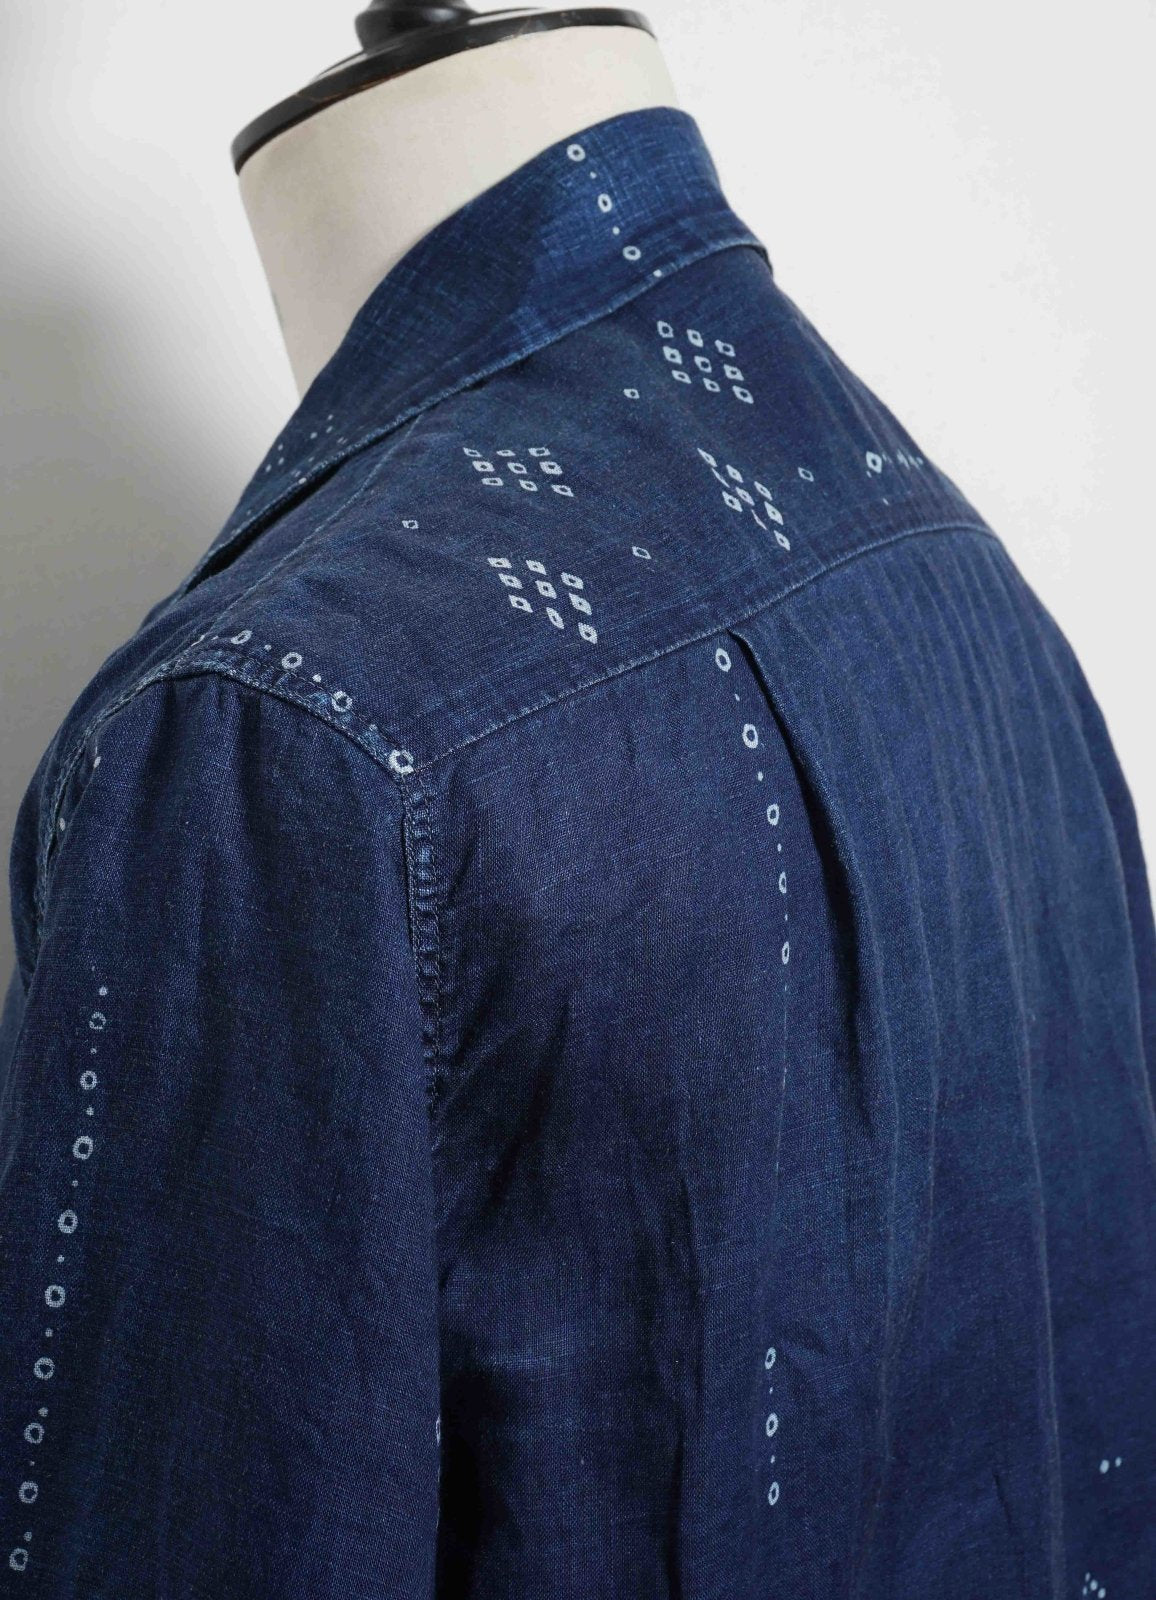 KAPITAL - ALOHA SHIRT REMAKE | French Cloth Linen Bandana | Indigo - HANSEN Garments